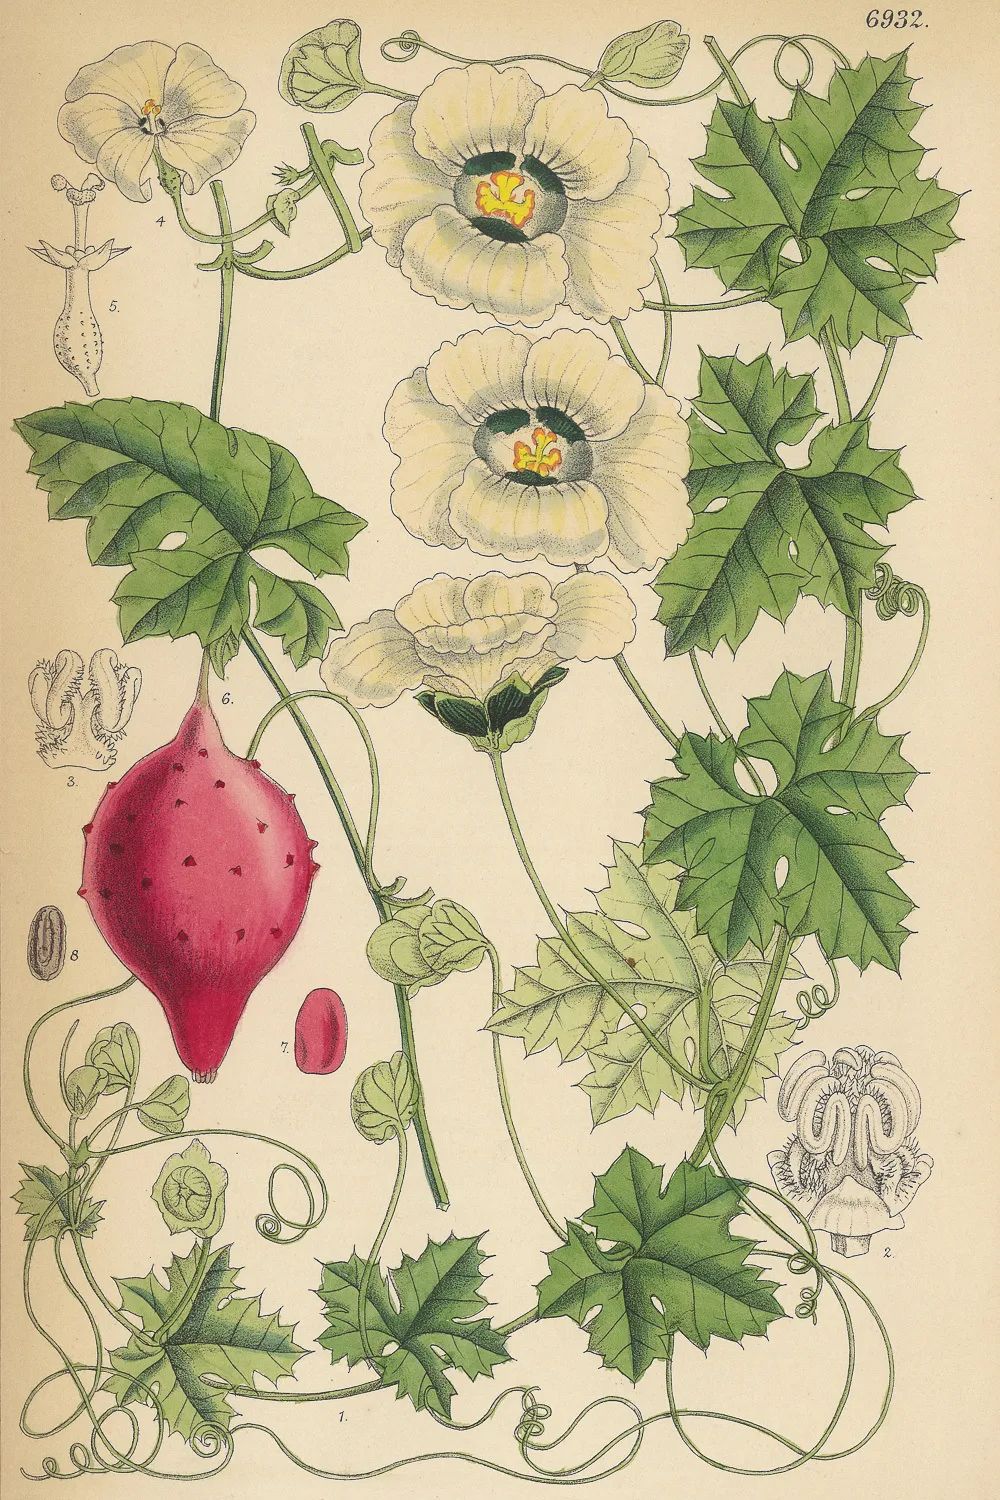 沙龙回顾NO.17｜世界植物的花谱：《柯蒂斯植物学杂志》与其植物版画艺术